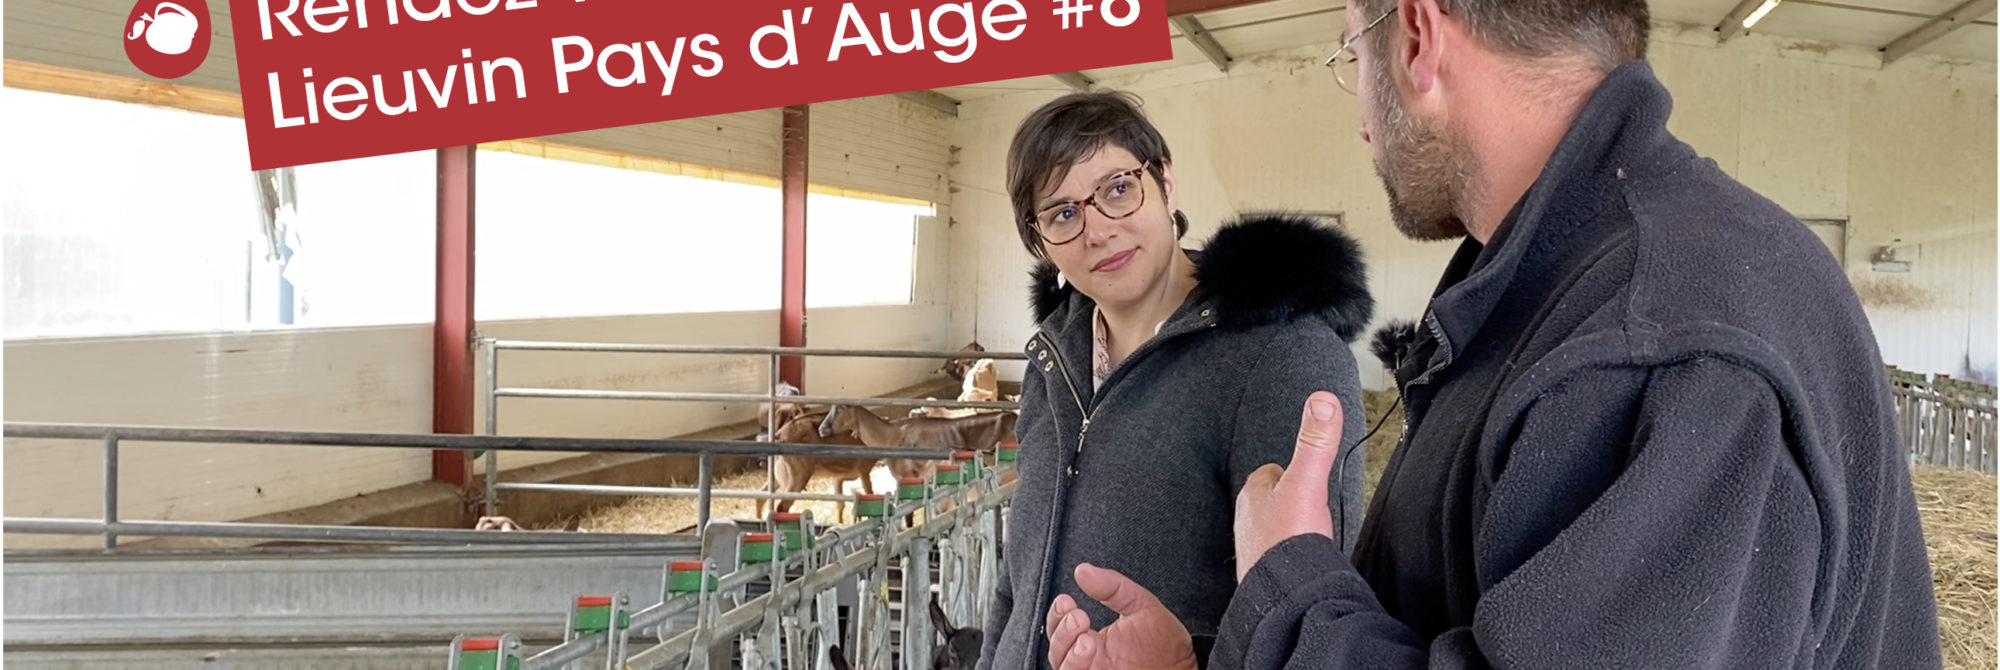 Rendez-vous en Lieuvin Pays d'Auge #8 : Découverte de la Chèvrerie du Mesnil à Fort-Moville
 1